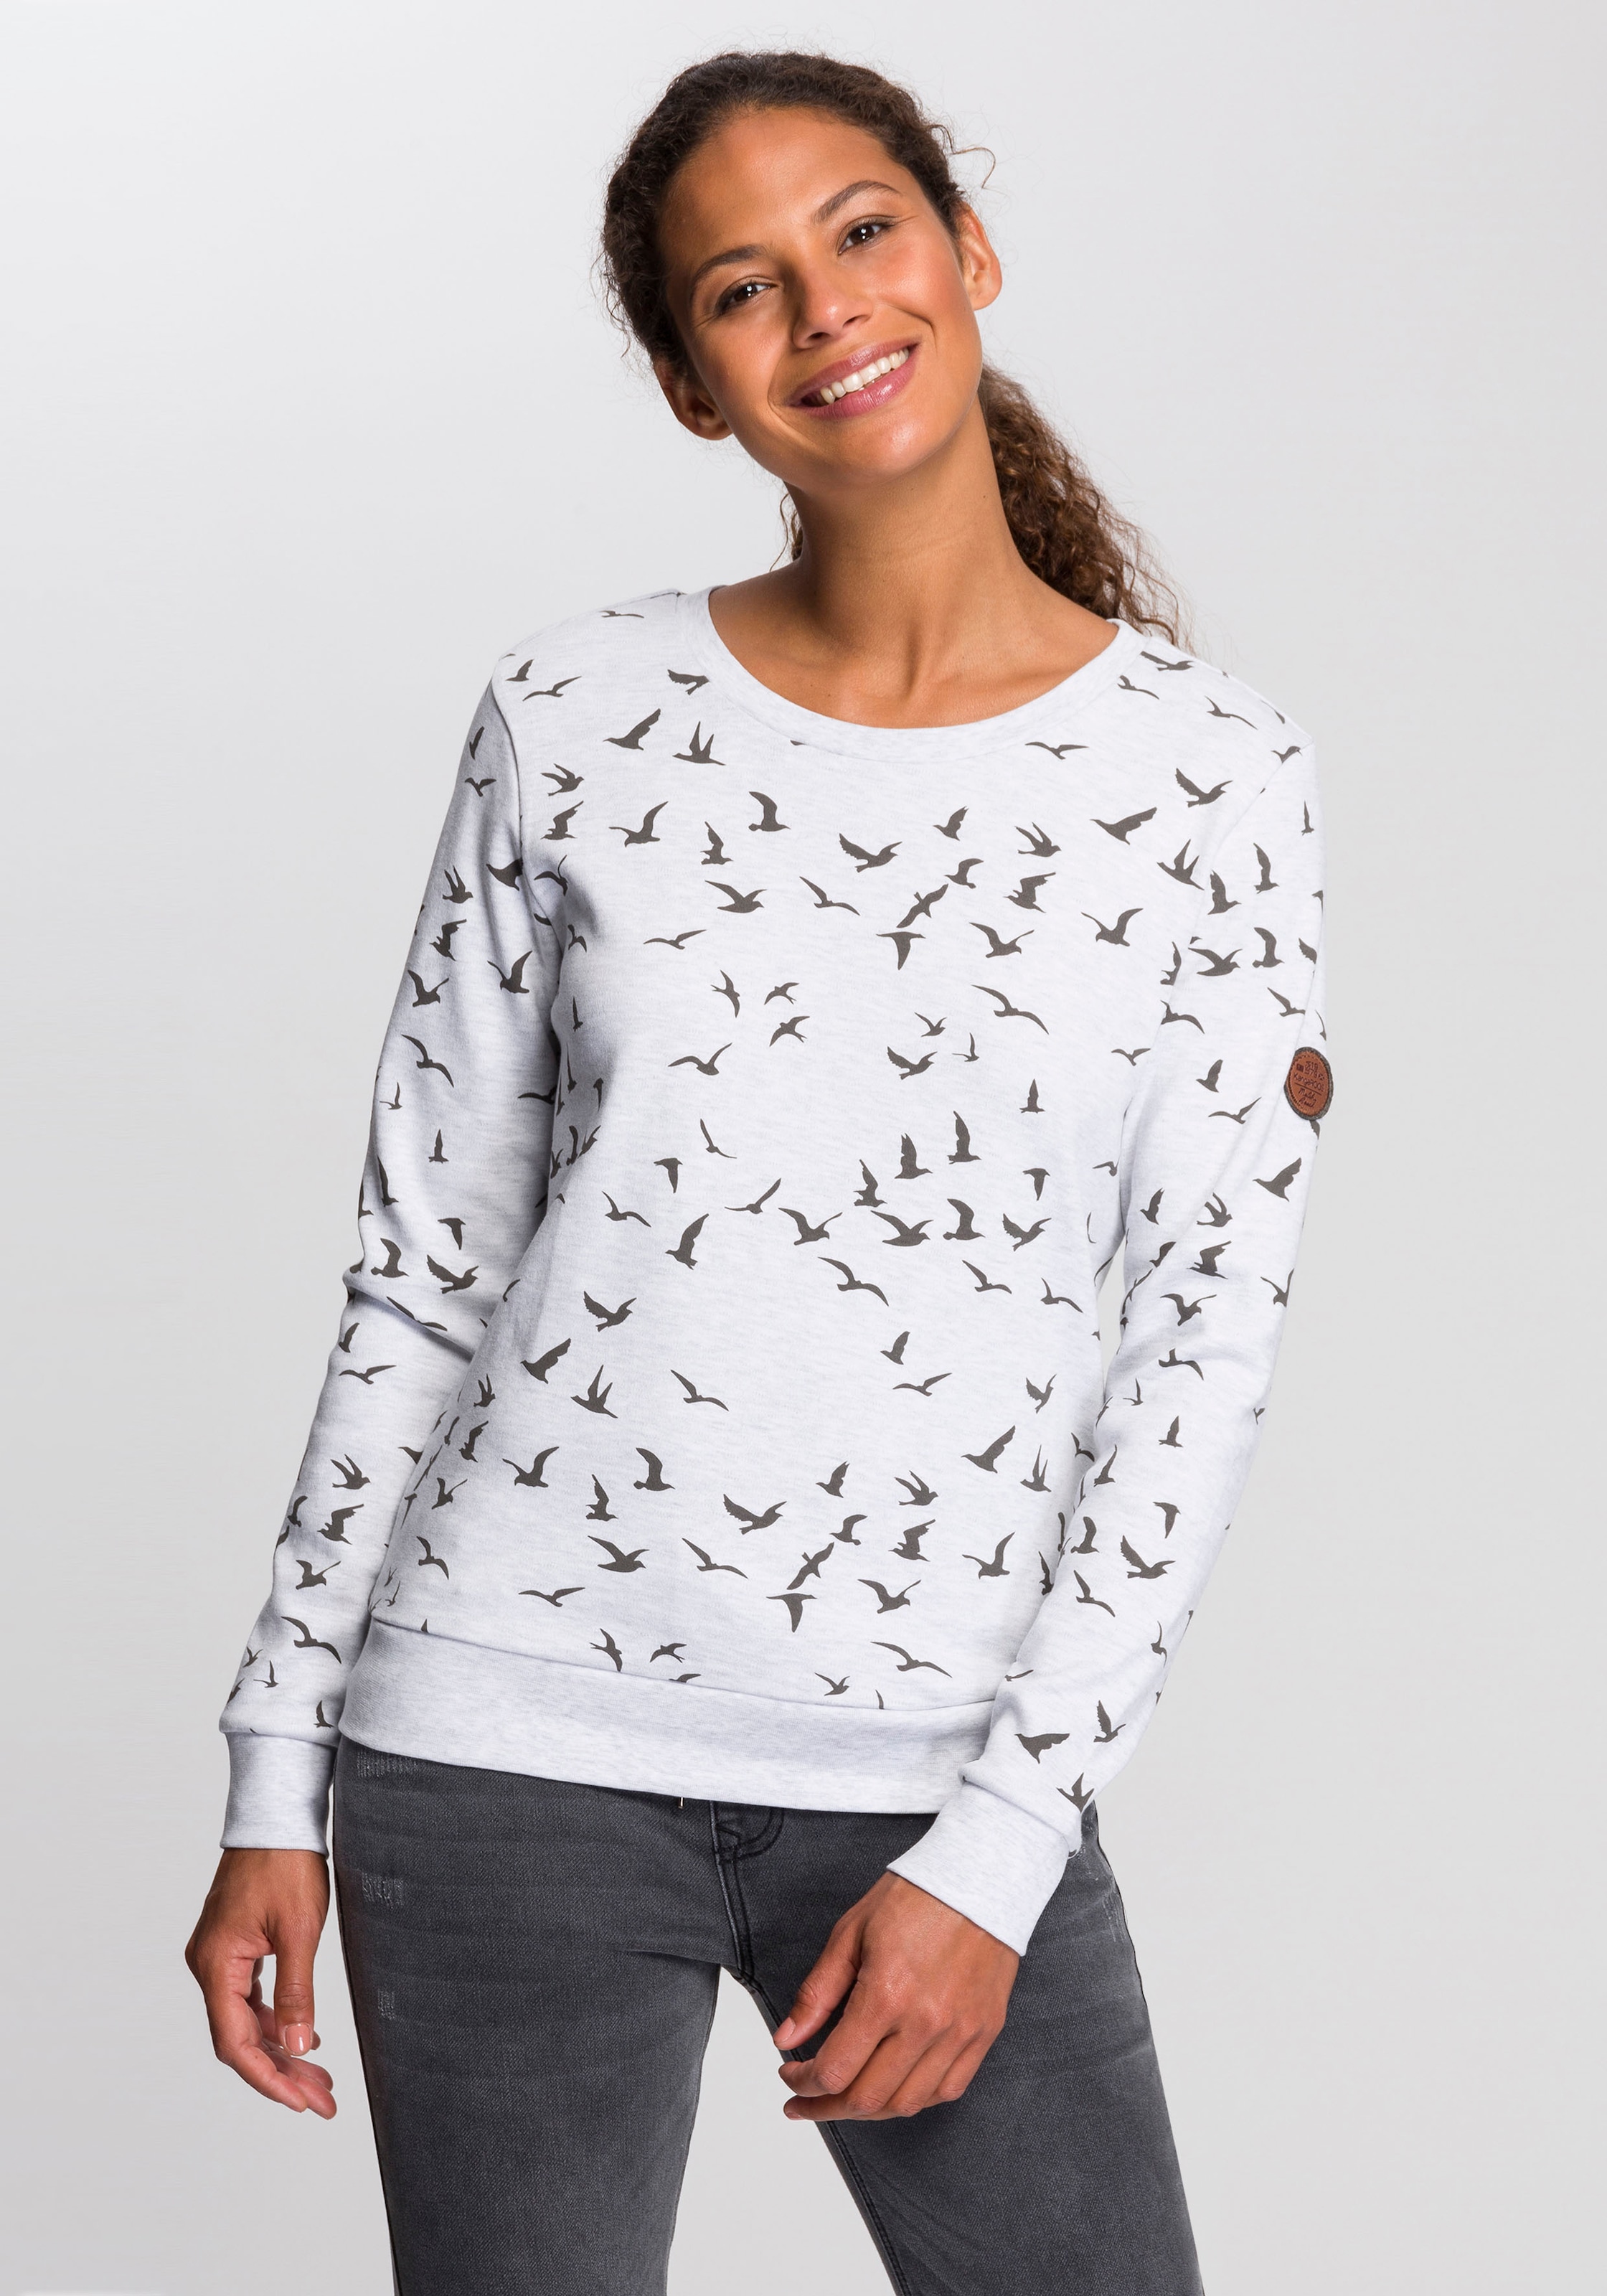 KangaROOS Sweatshirt, mit ♕ bei modischem Minimal-Allover-Print